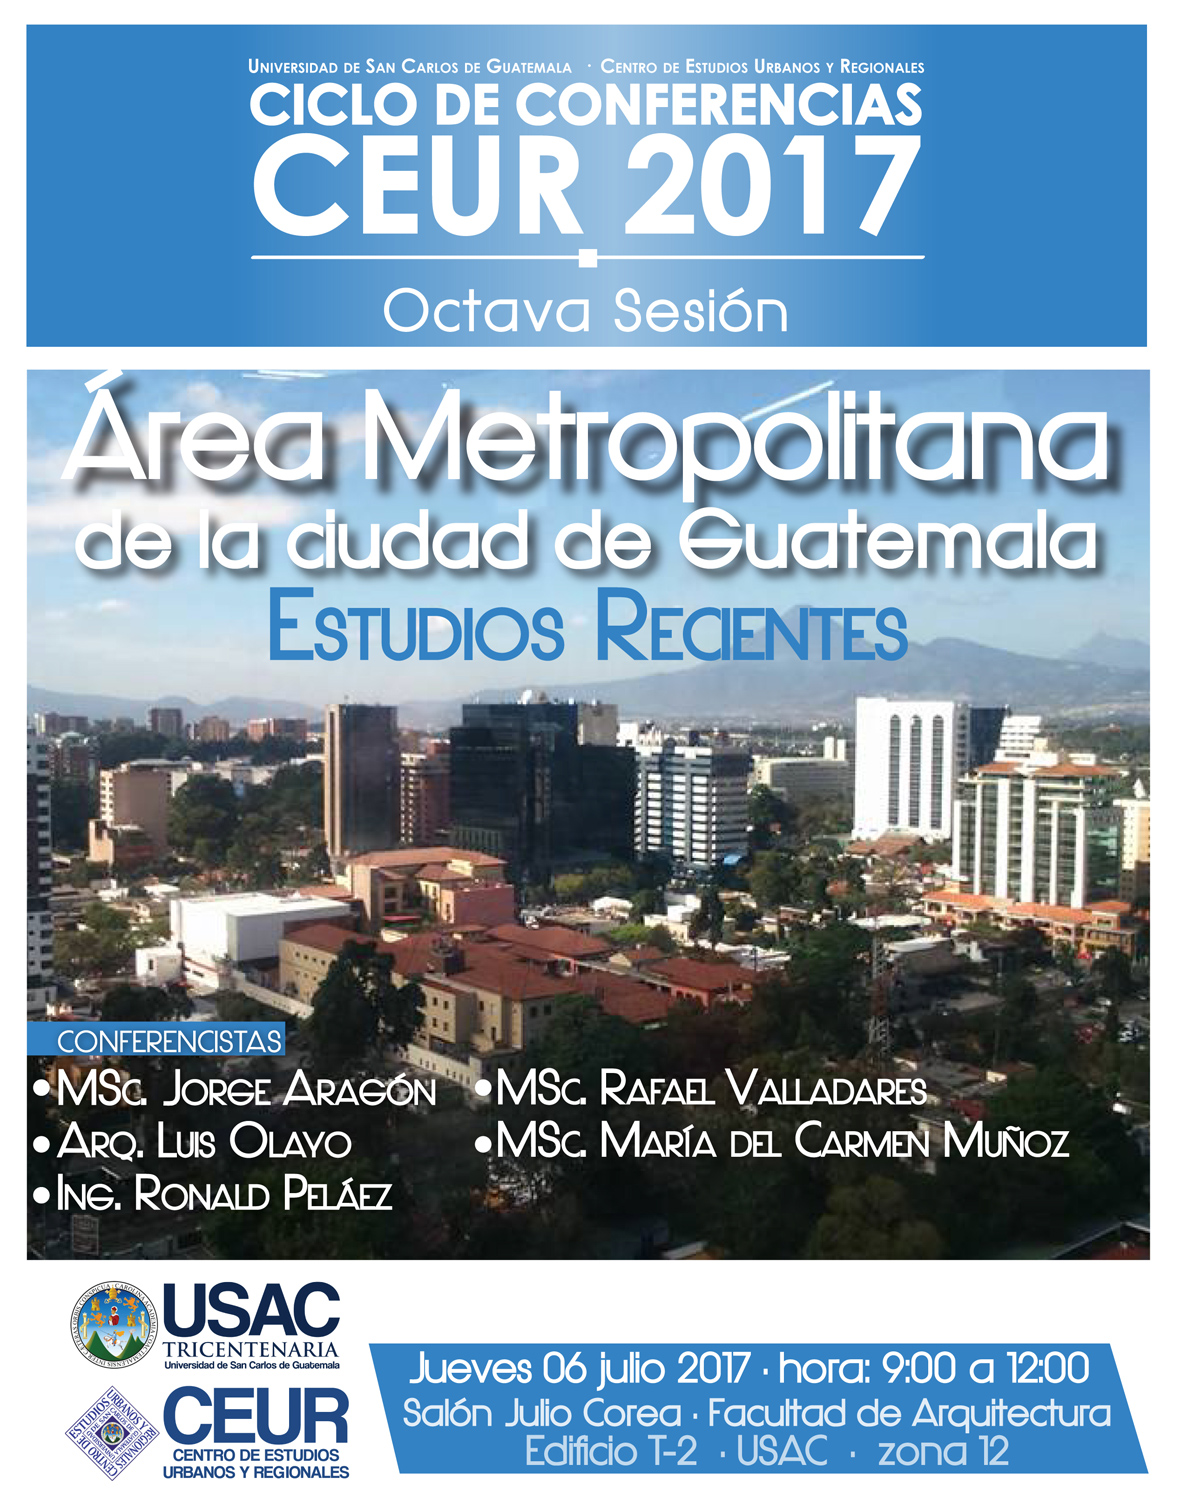 Conferencia:Área Metropolitana de la ciudad de Guatemala